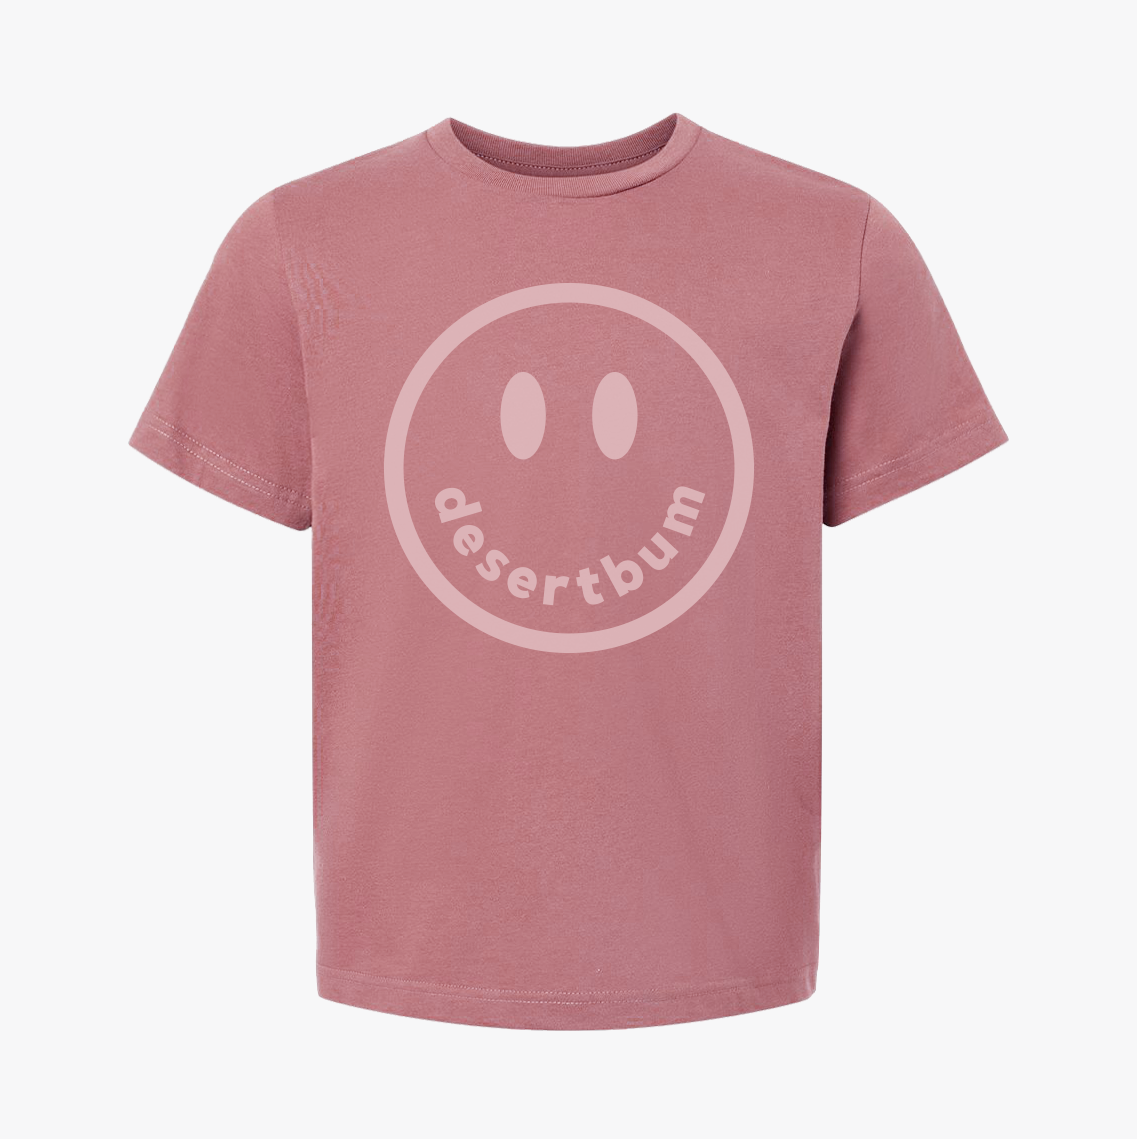 Children's Desert Bum Shirt (Pink)